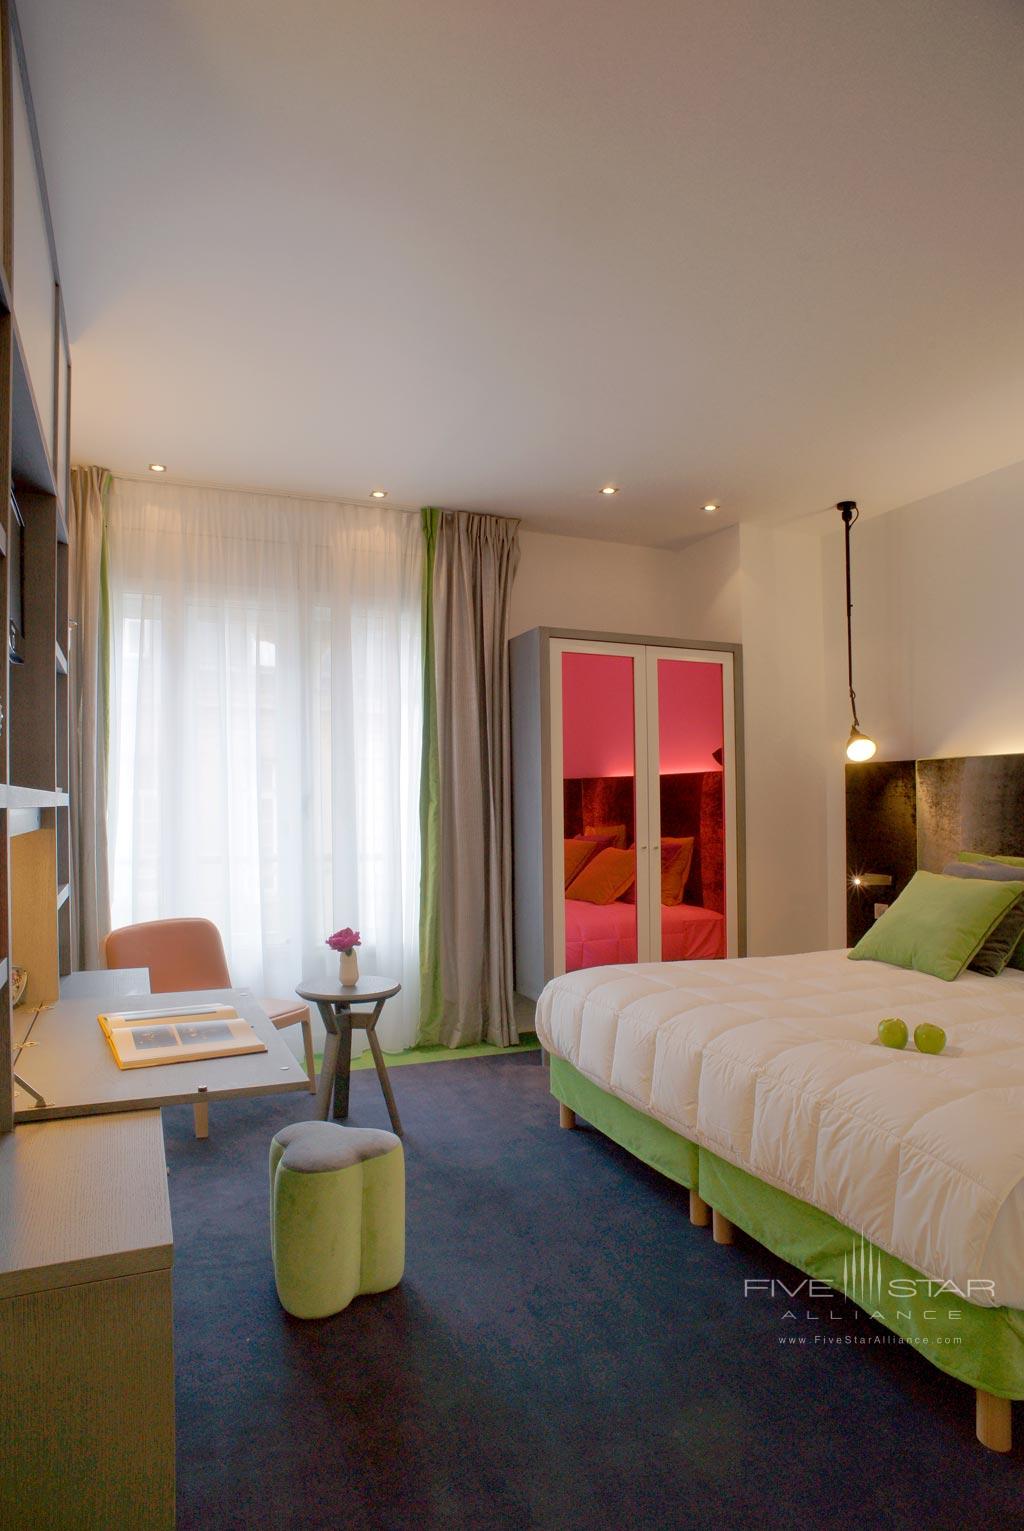 Guest Room at Hotel Bel Ami Paris, France